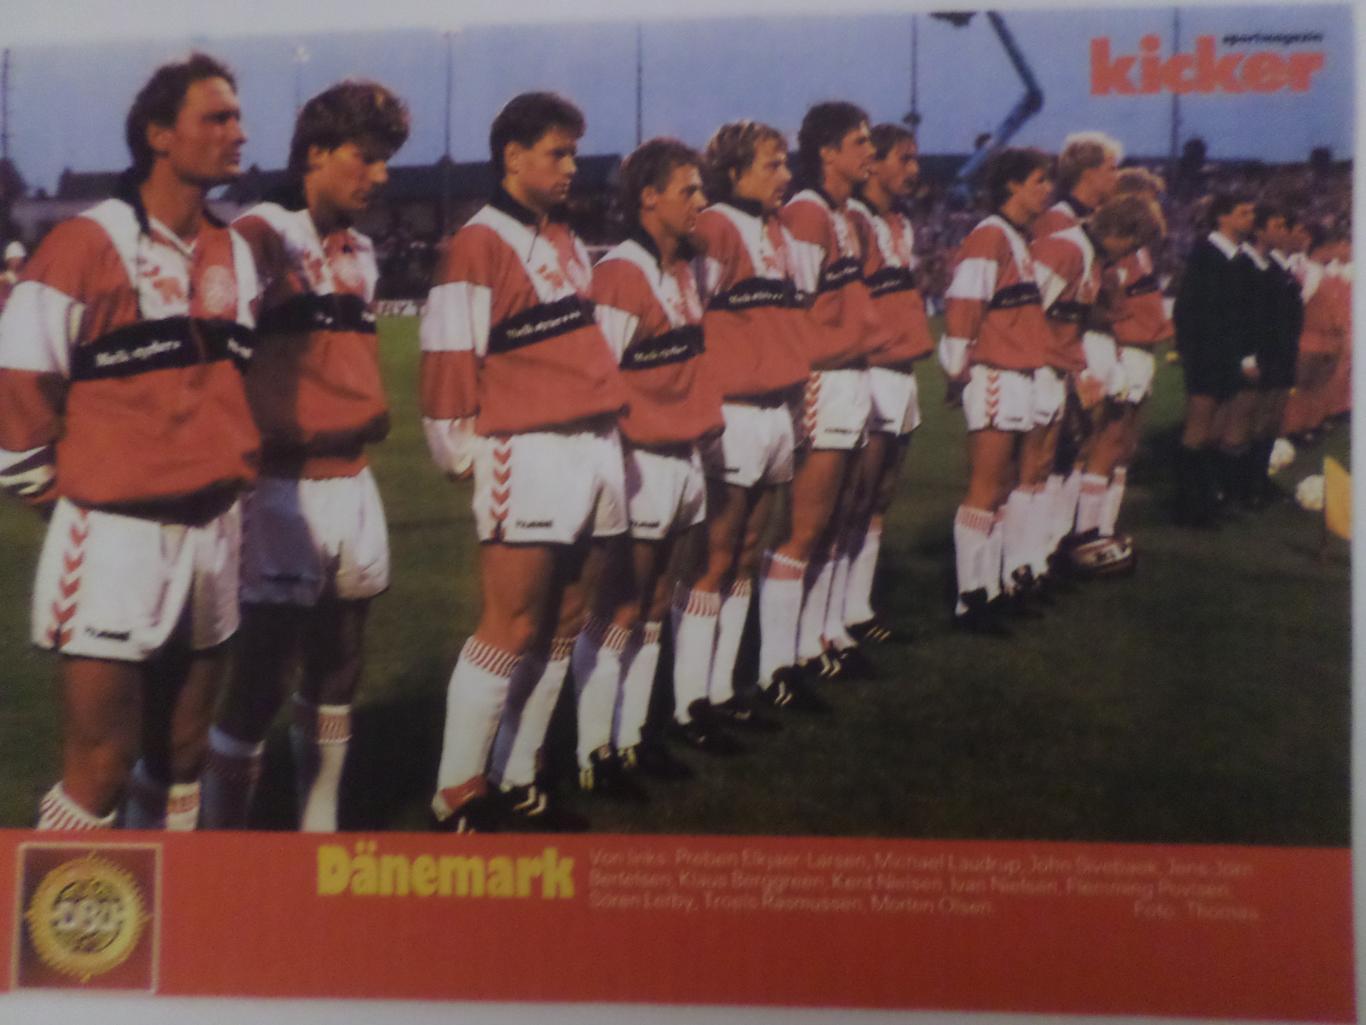 постер из журнала Киккер Германия ( цветная ксерокопия) сборная Дания 1988 г